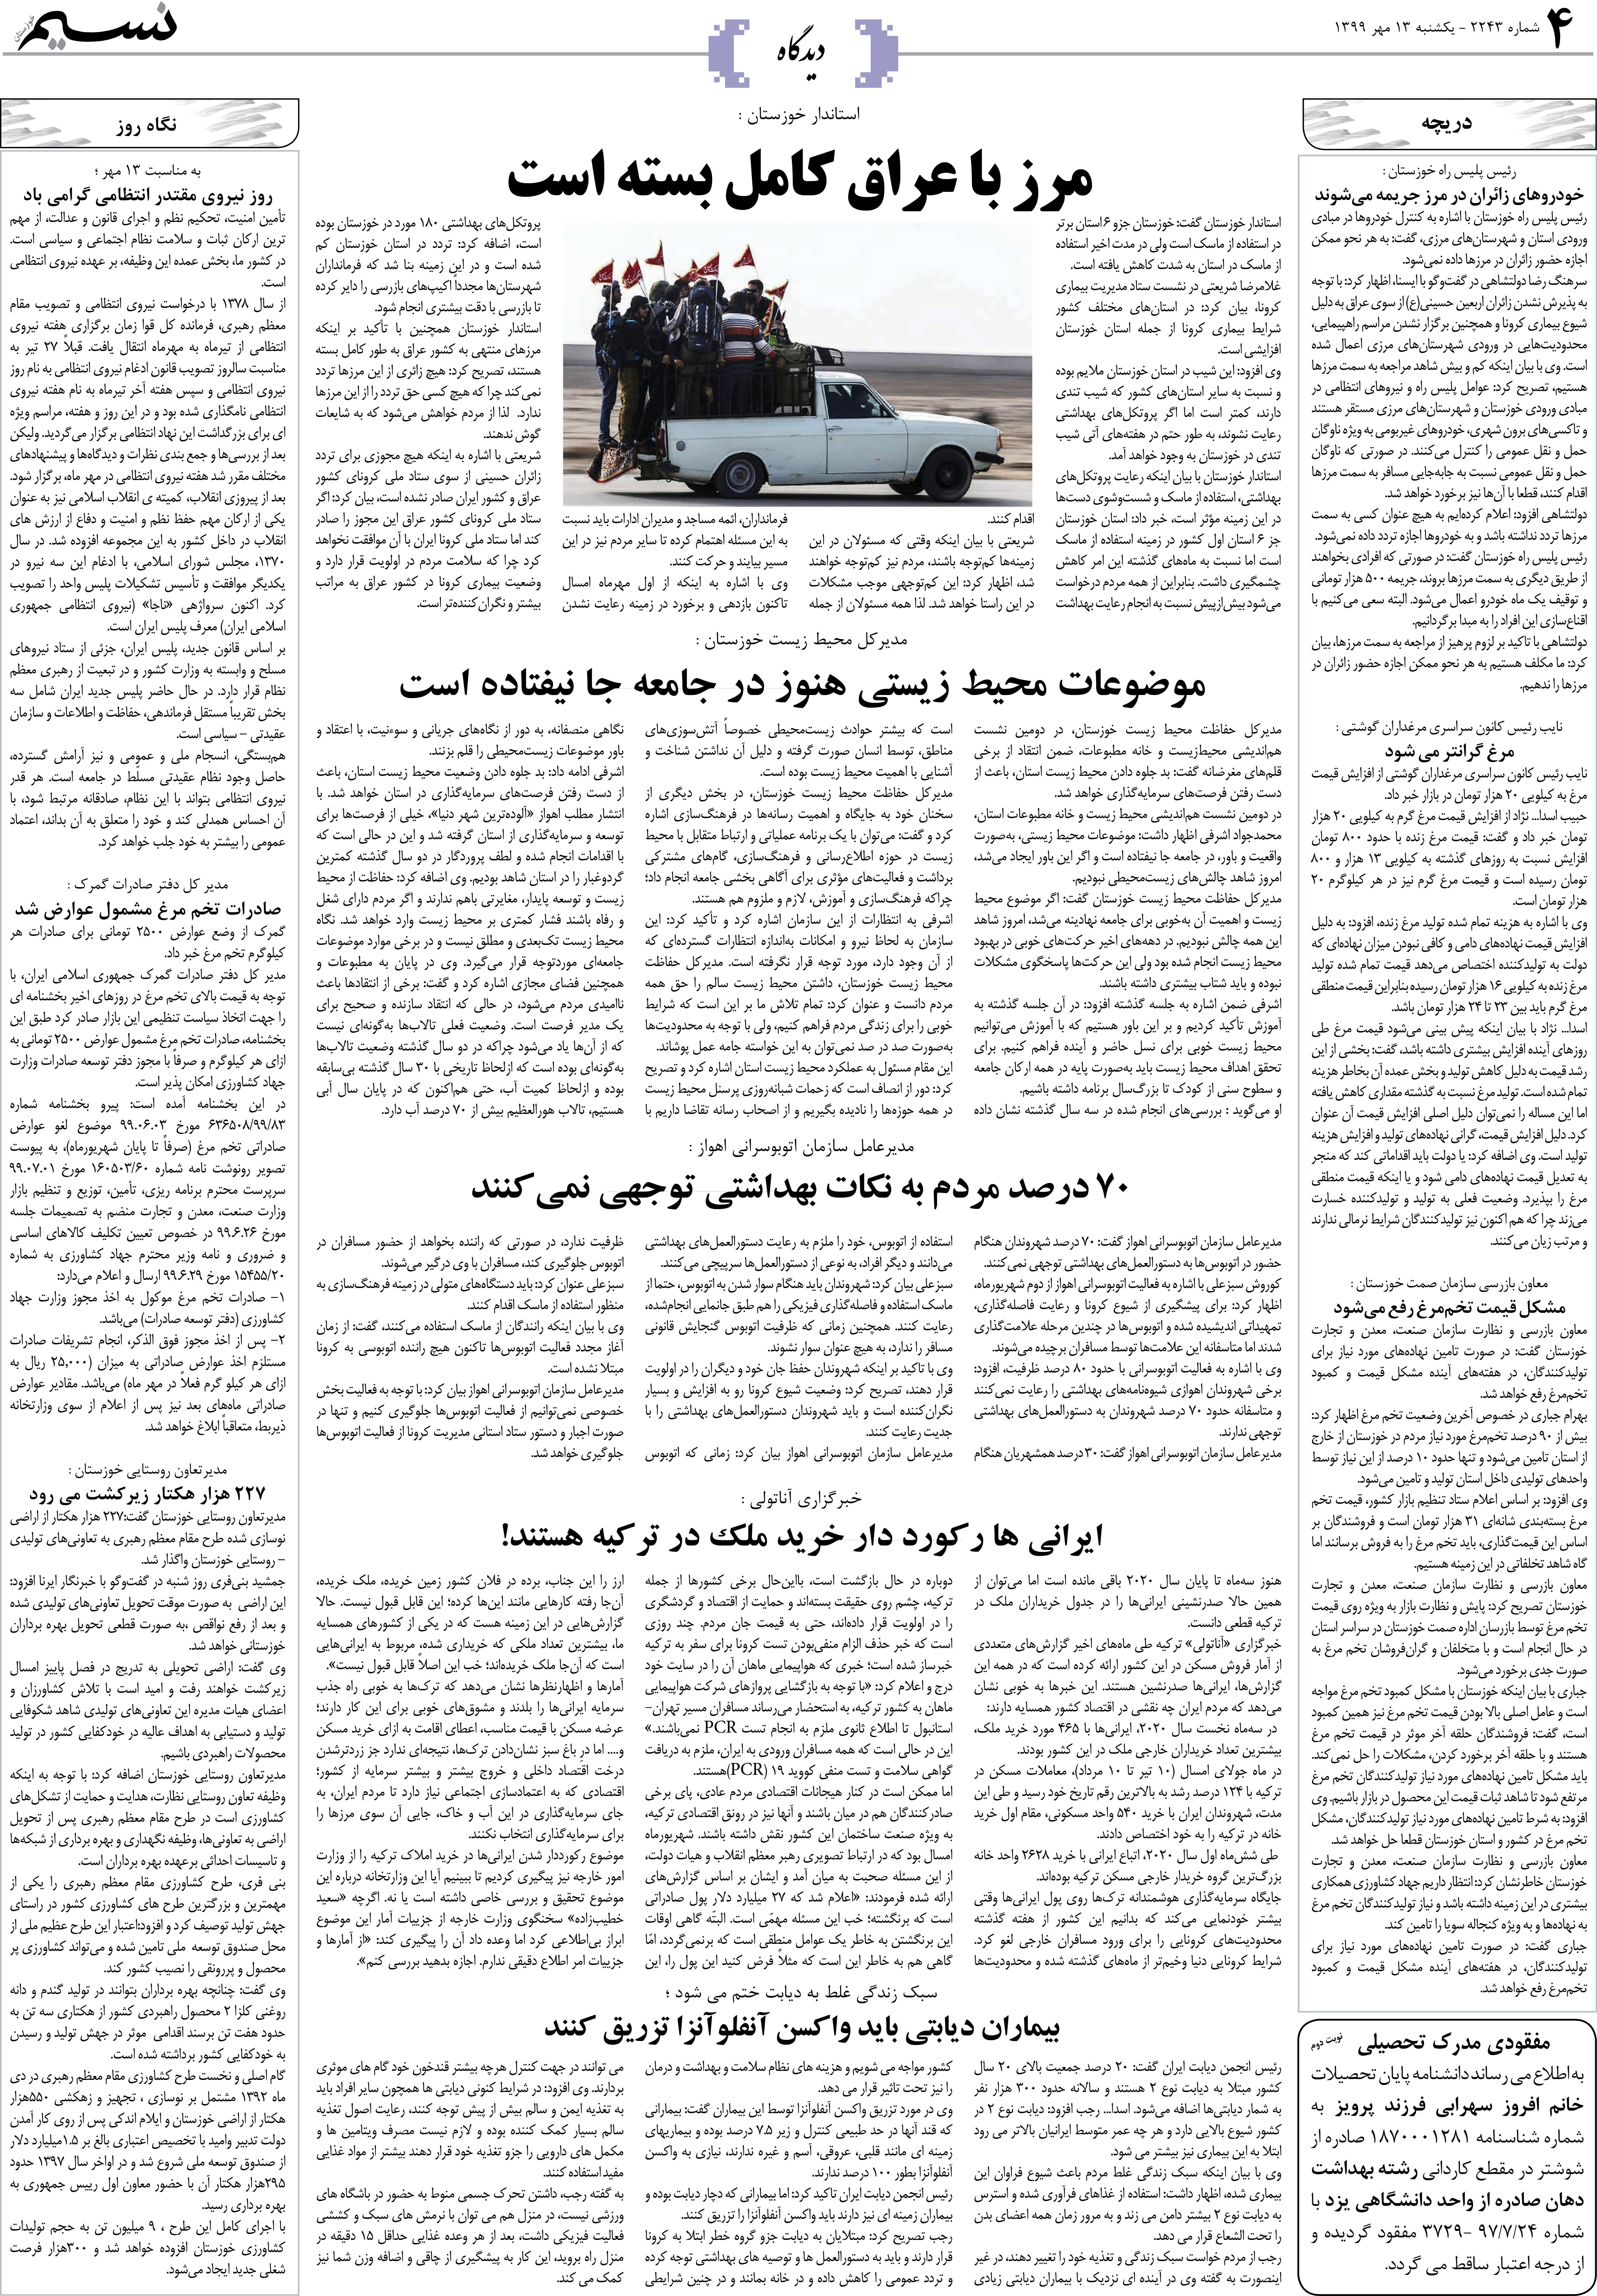 صفحه دیدگاه روزنامه نسیم شماره 2243